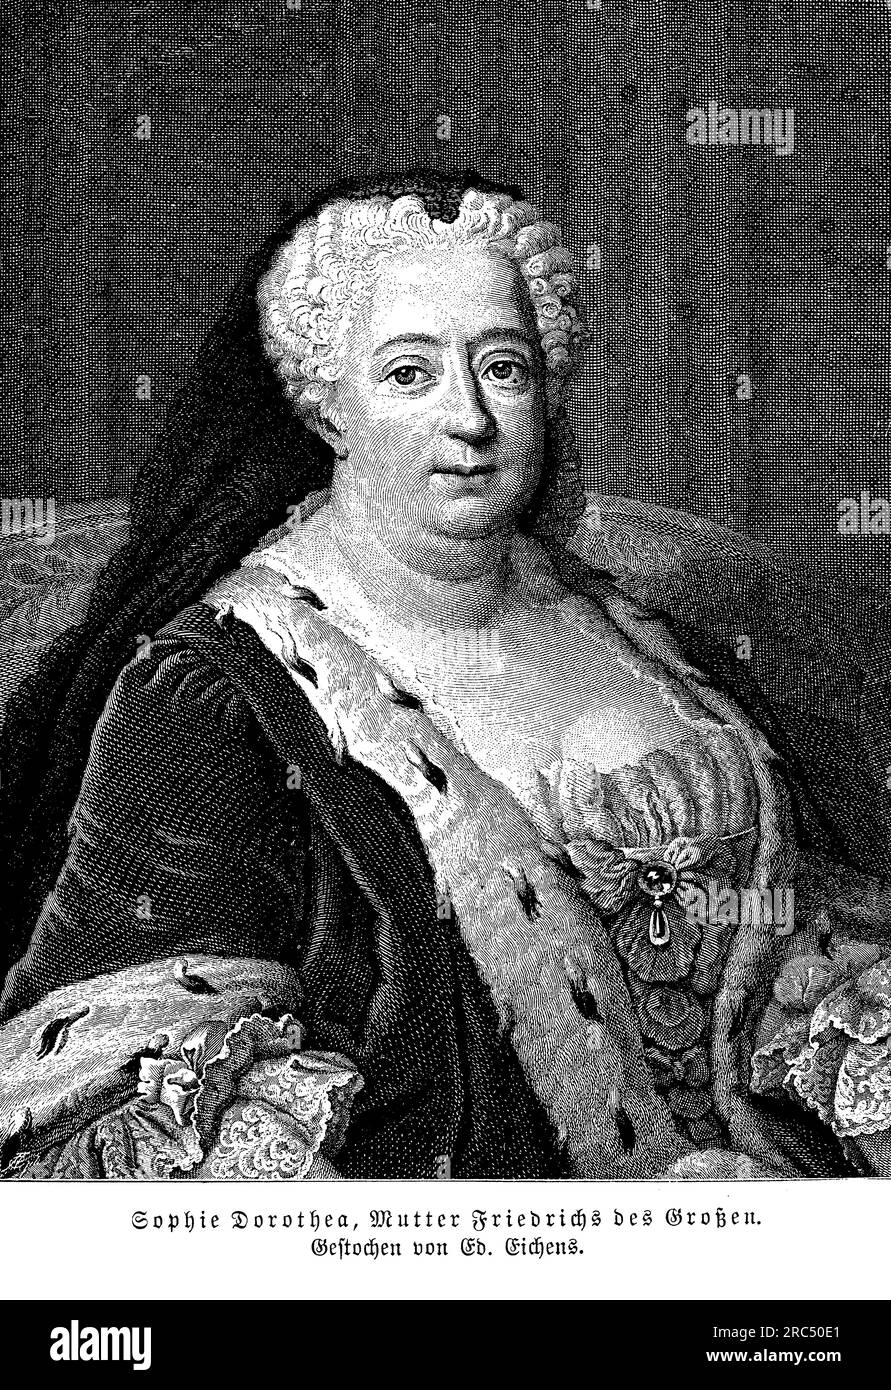 Portrait de Sophie Dorothée de Hanovre épouse de Friedrich Wilhelm Ier, roi de Prusse. Elle était la fille du roi George Ier de Grande-Bretagne et une figure éminente de la vie de la cour prussienne. Sophie Dorothea a joué un rôle important dans la formation des cercles culturels et intellectuels prussiens pendant son temps. Elle était connue pour son intelligence, son charme et ses compétences diplomatiques, établissant des liens avec des personnalités influentes à travers l'Europe. Sophie Dorothée a également eu une profonde influence sur son fils, Frédéric le Grand, encourageant ses activités intellectuelles et soutenant son ascension au trône. Elle Banque D'Images